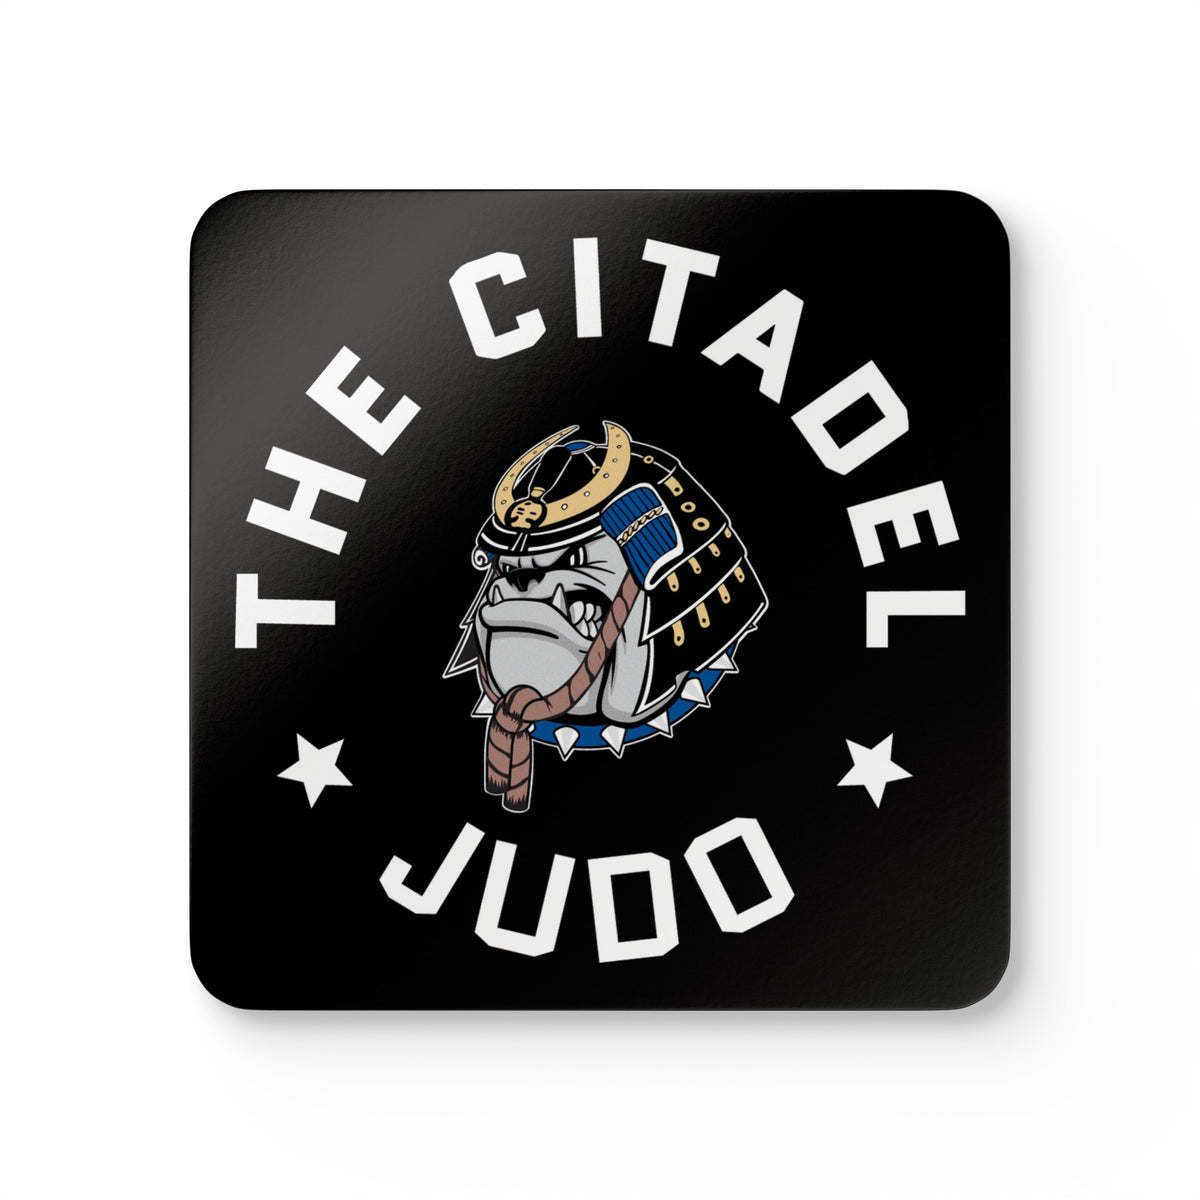 The Citadel, Club Sports - Judo, Corkwood Coaster Set of 4